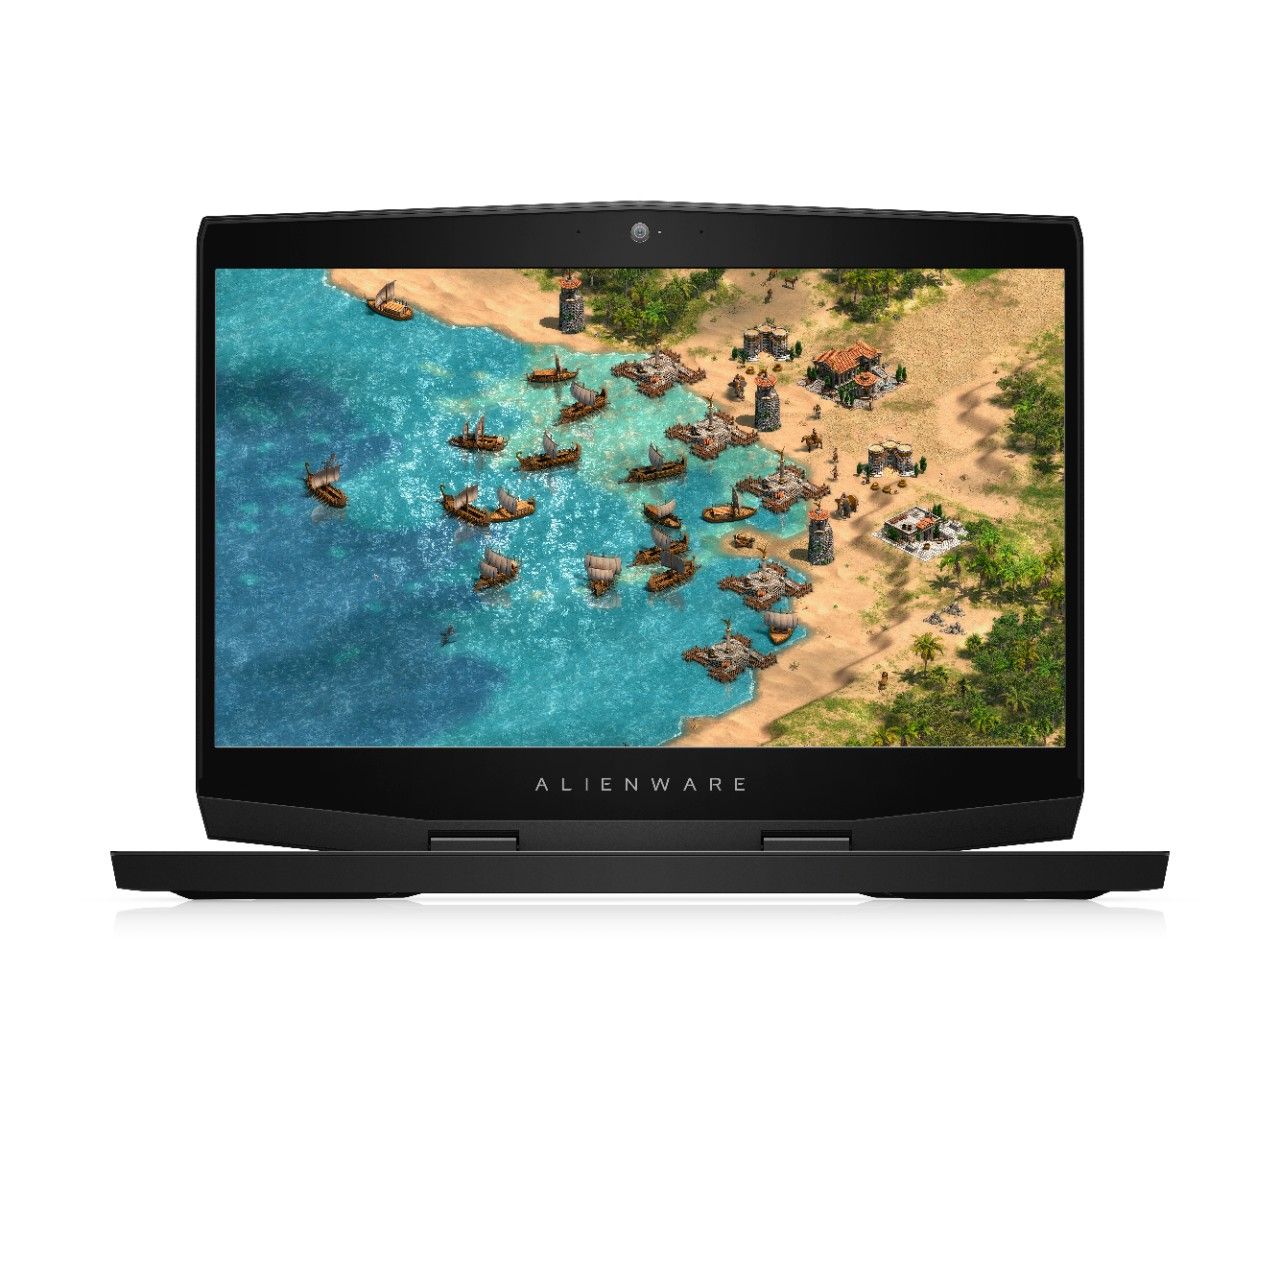 Alienware 15 Gaming Laptop i7-8750H 2.2GHz/16GB RAM/1TB+256GB SSD/NVIDIA GeForce GTX 1060 6GB GDDR5/15.6 inch FHD/Windows 10/Silver